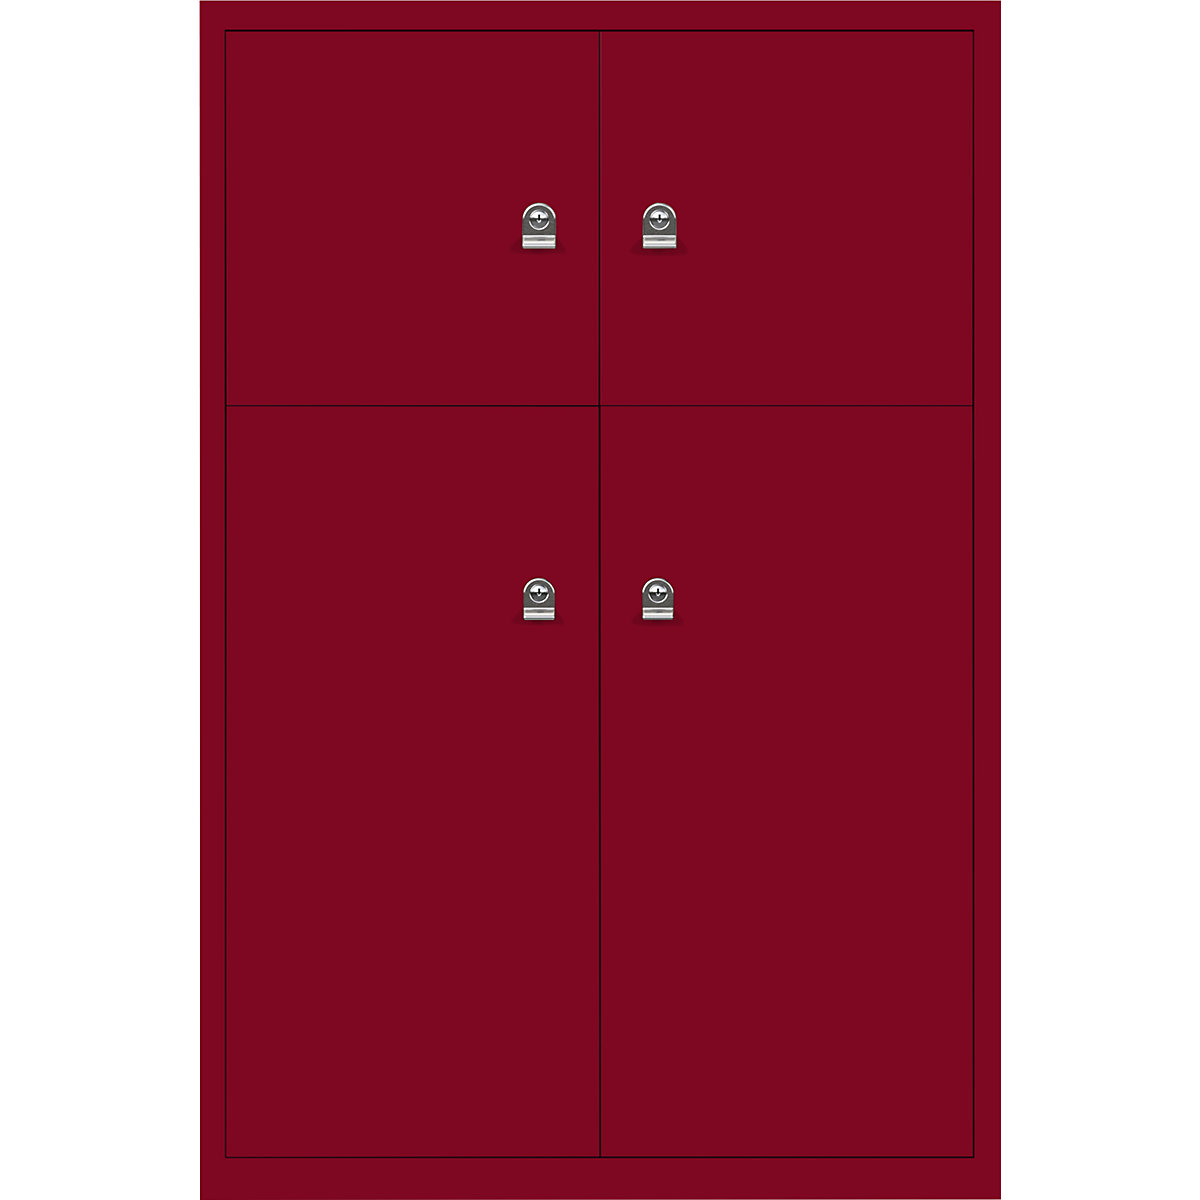 Ormar LateralFile™ Lodge – BISLEY, s 4 pretinca sa zaključavanjem, visina 2 x 375 mm, 2 x 755 mm, u kardinal crvenoj boji-30